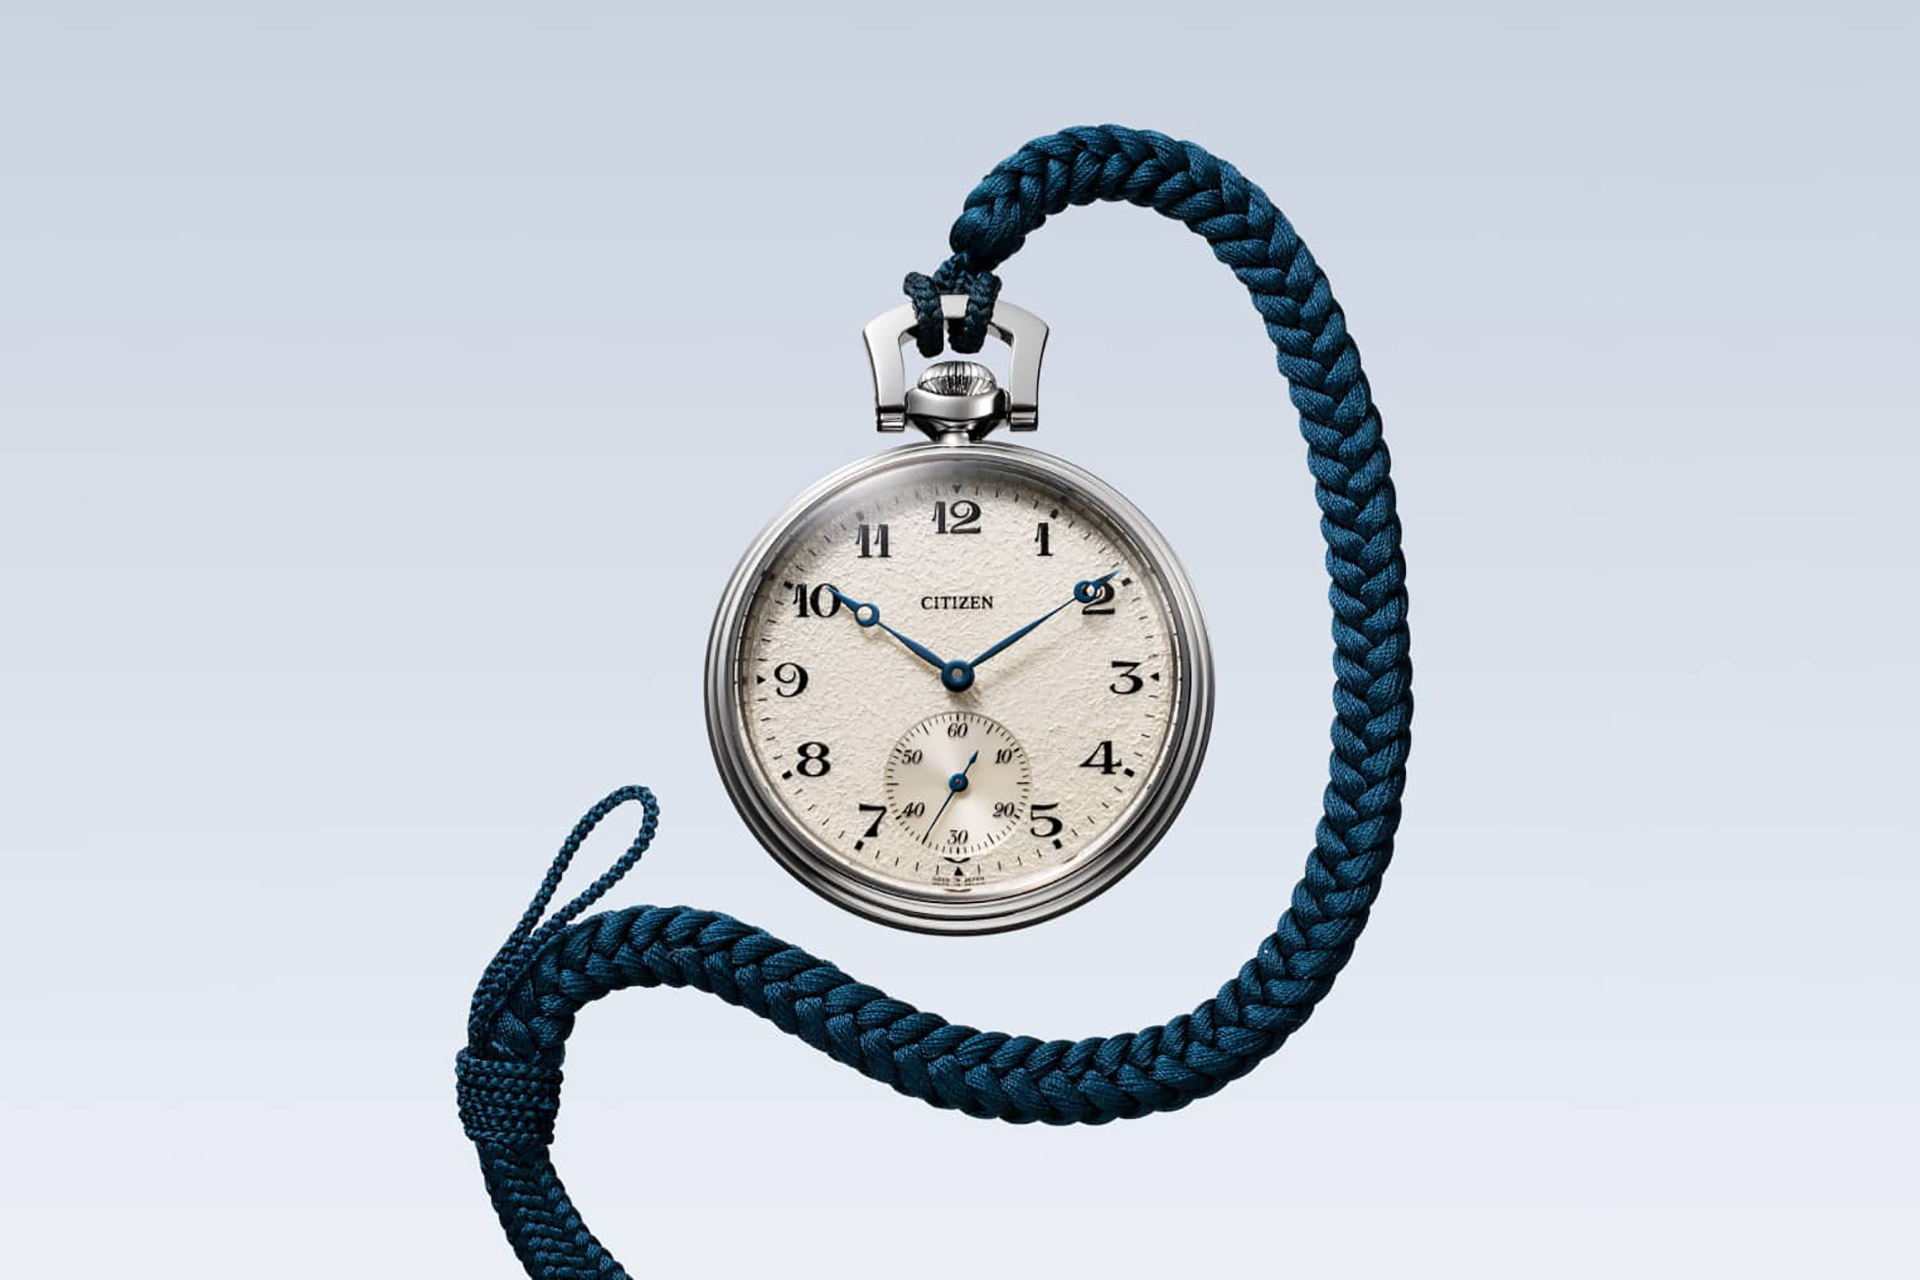 Карманные часы Citizen, посвященные 100-летию